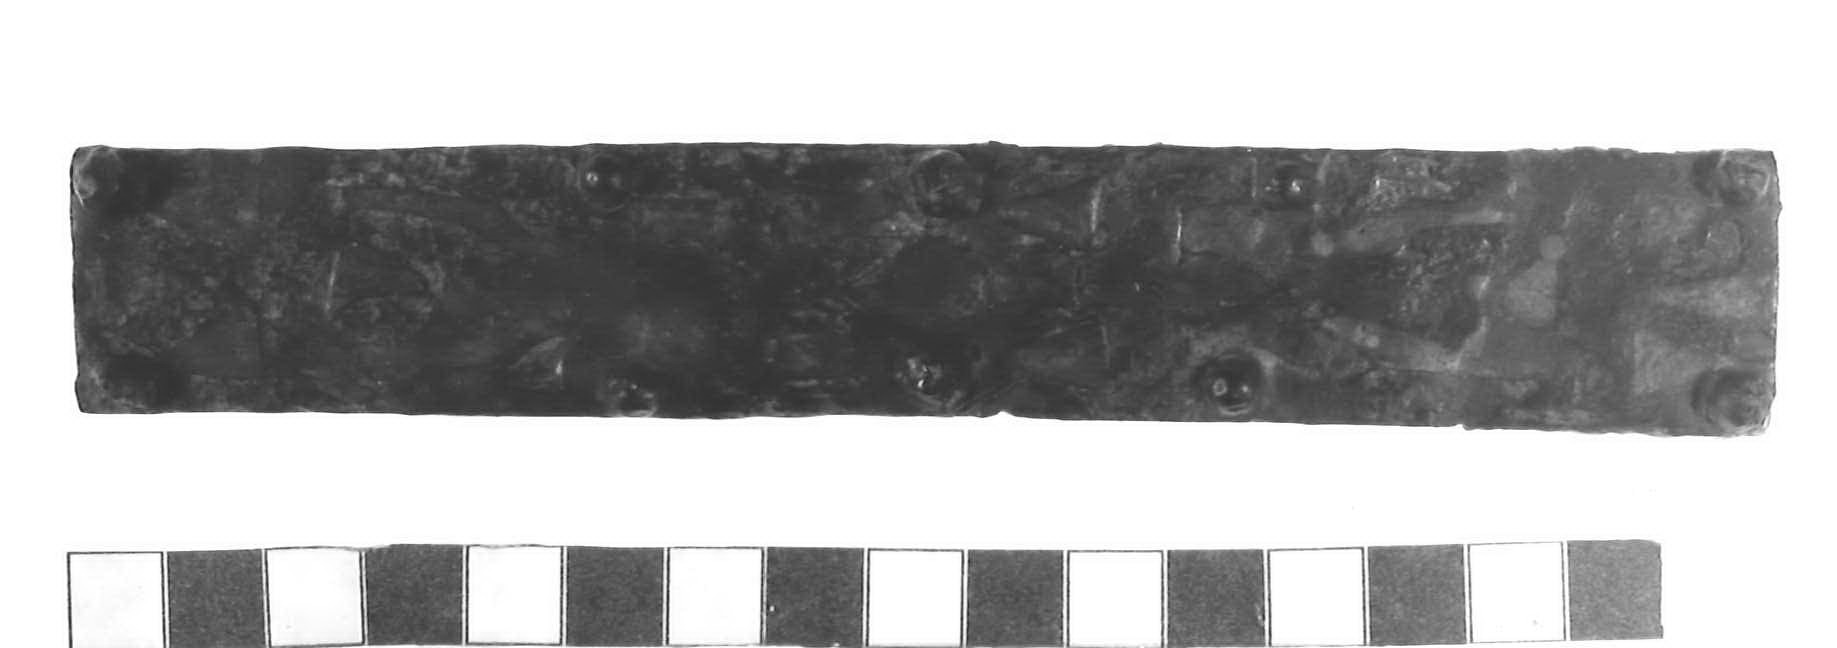 placca di rivestimento - Piceno III (secc. VII-VI a.C)